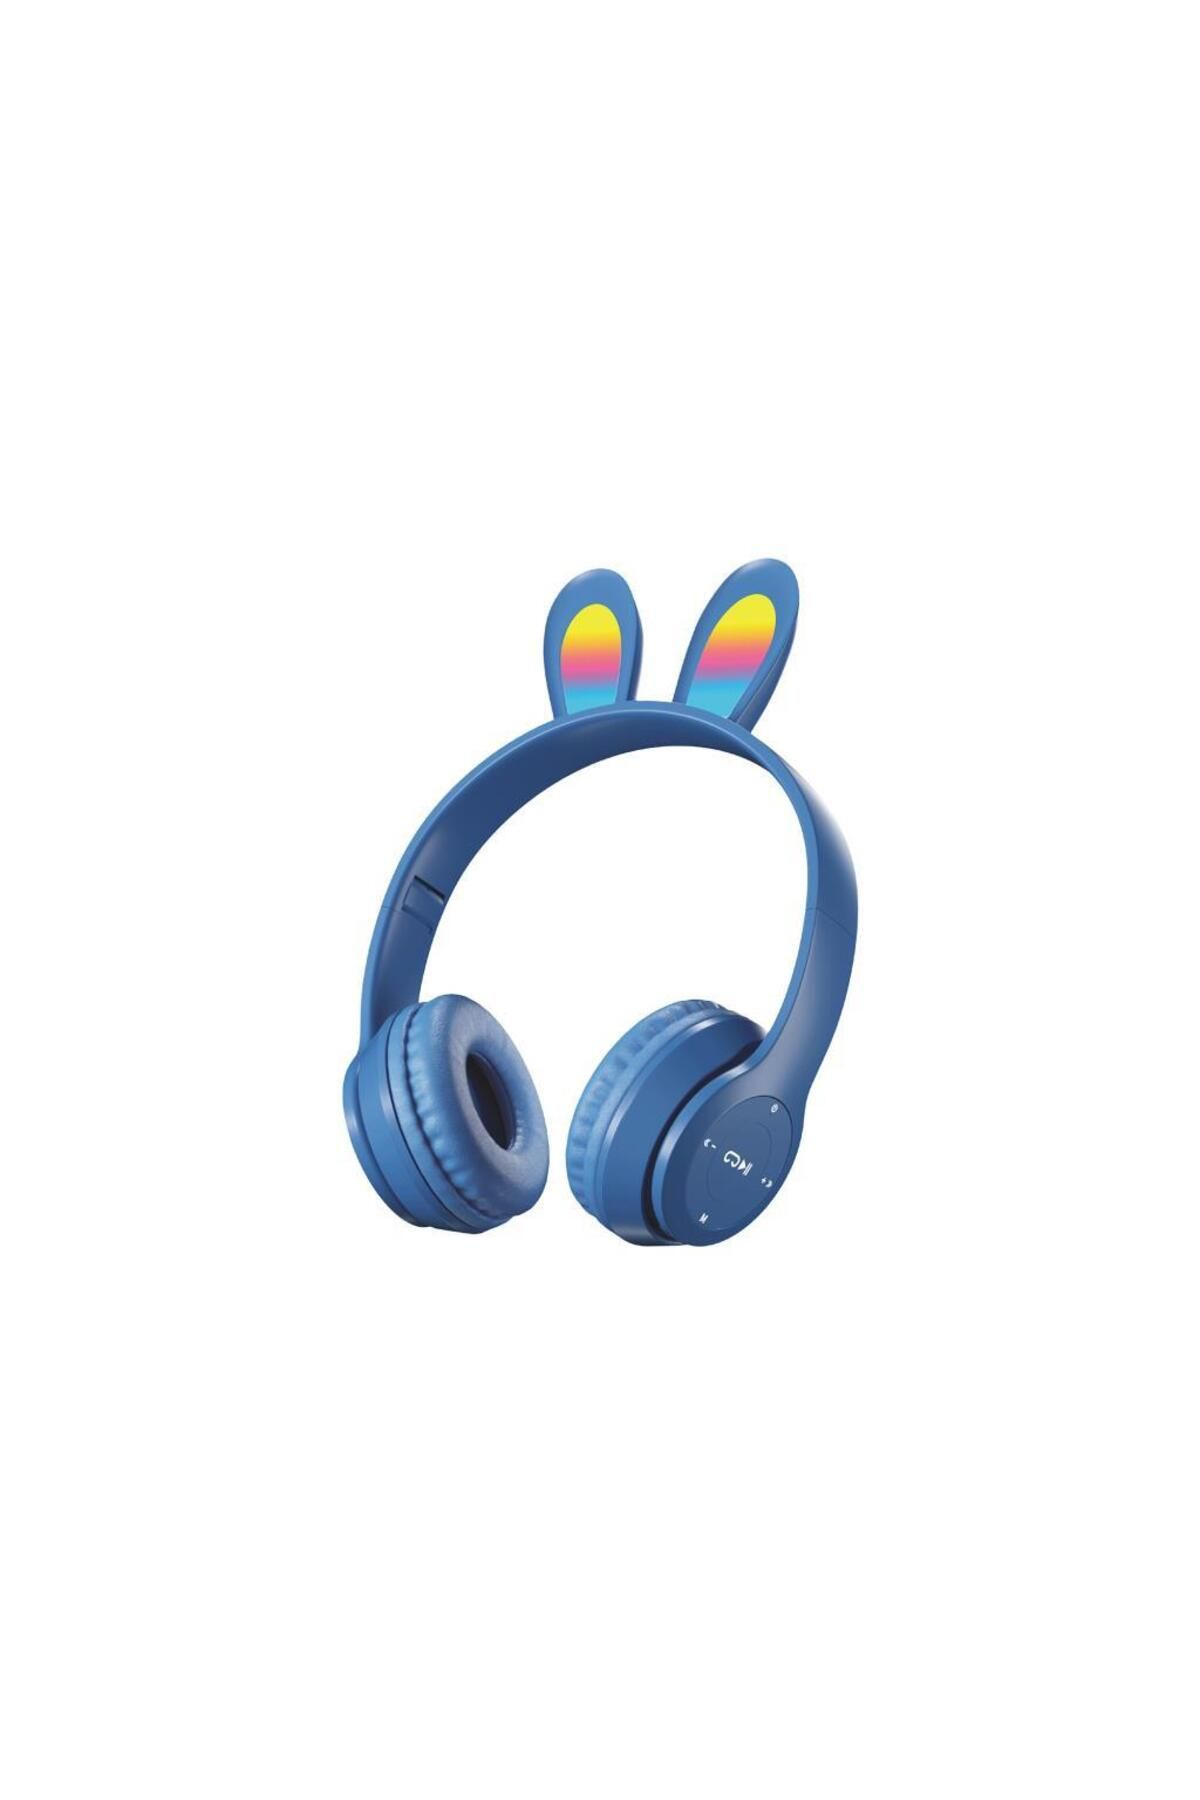 Sunix Wireless 5.0 Stereo Tavşan Kulak Üstü Bluetooth Kulaklık Lacivert Blt-43